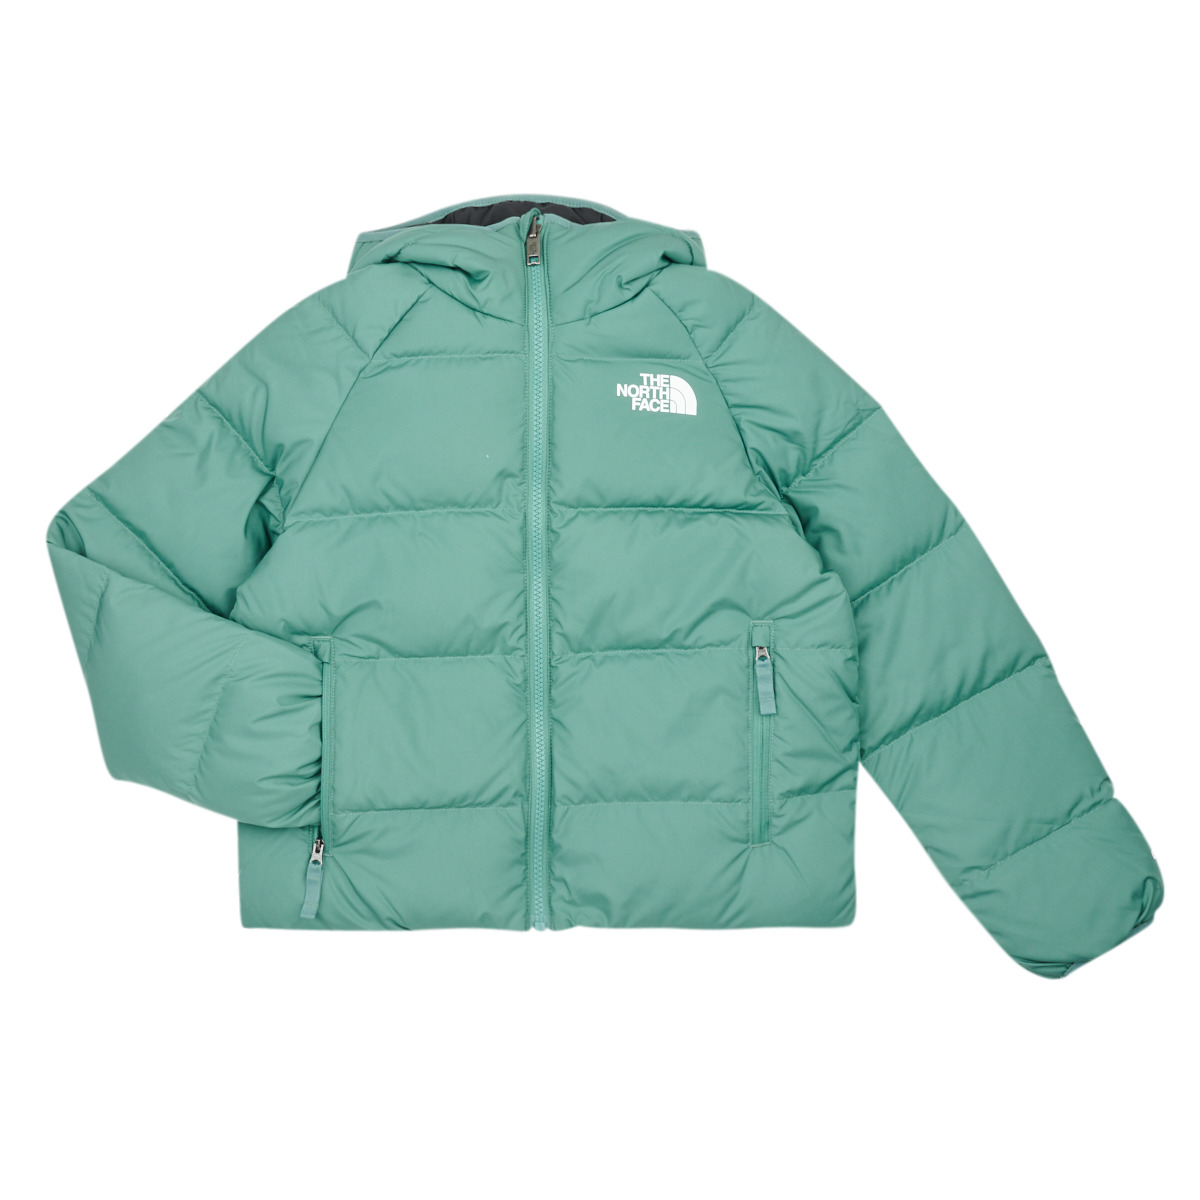 Textil Chlapecké Prošívané bundy The North Face Boys North DOWN reversible hooded jacket Černá / Zelená